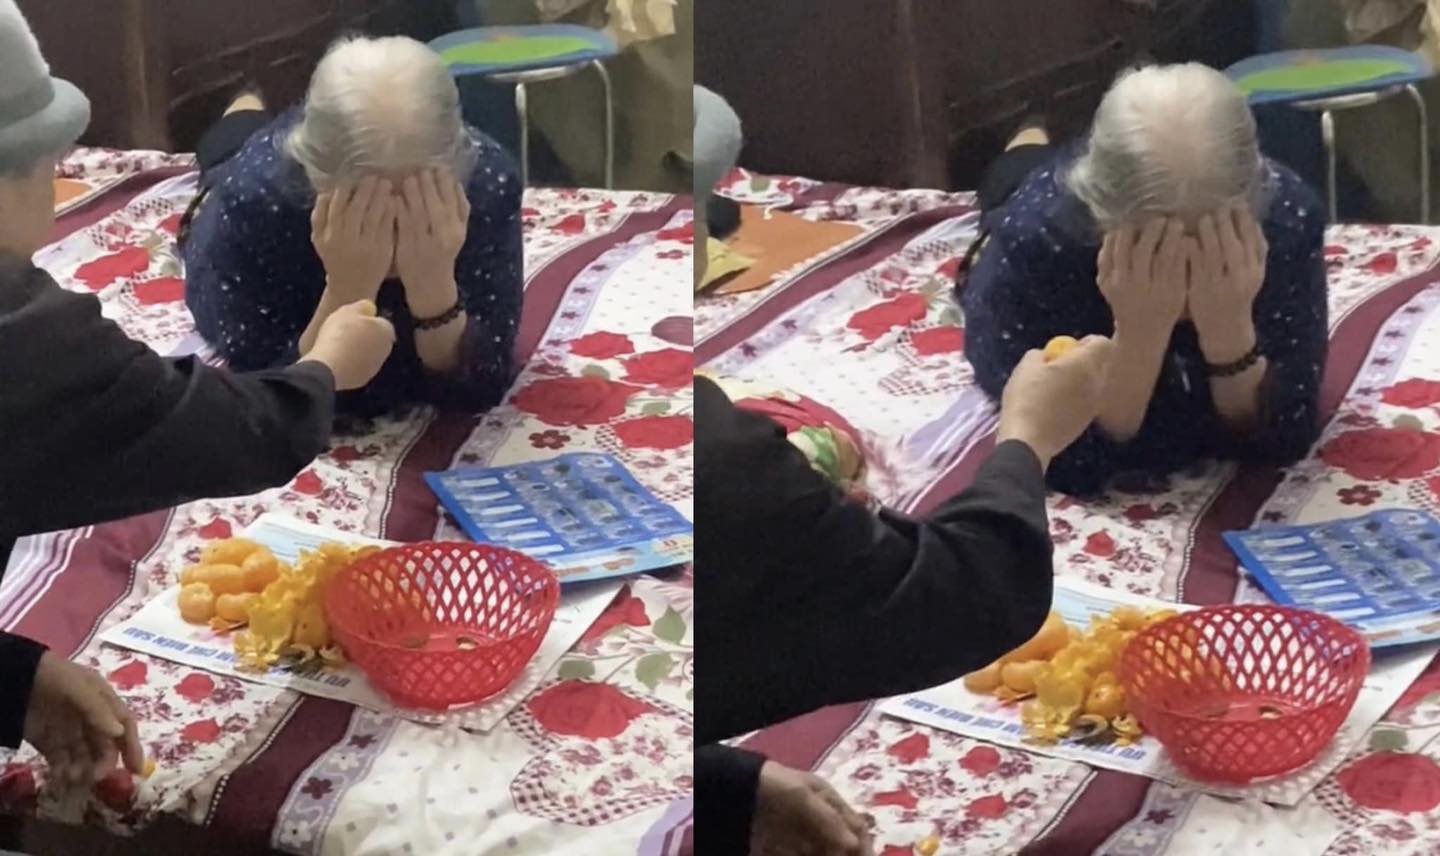 Hình ảnh và câu chuyện về cụ bà 90 tuổi đang được lan truyền khắp cộng đồng mạng.